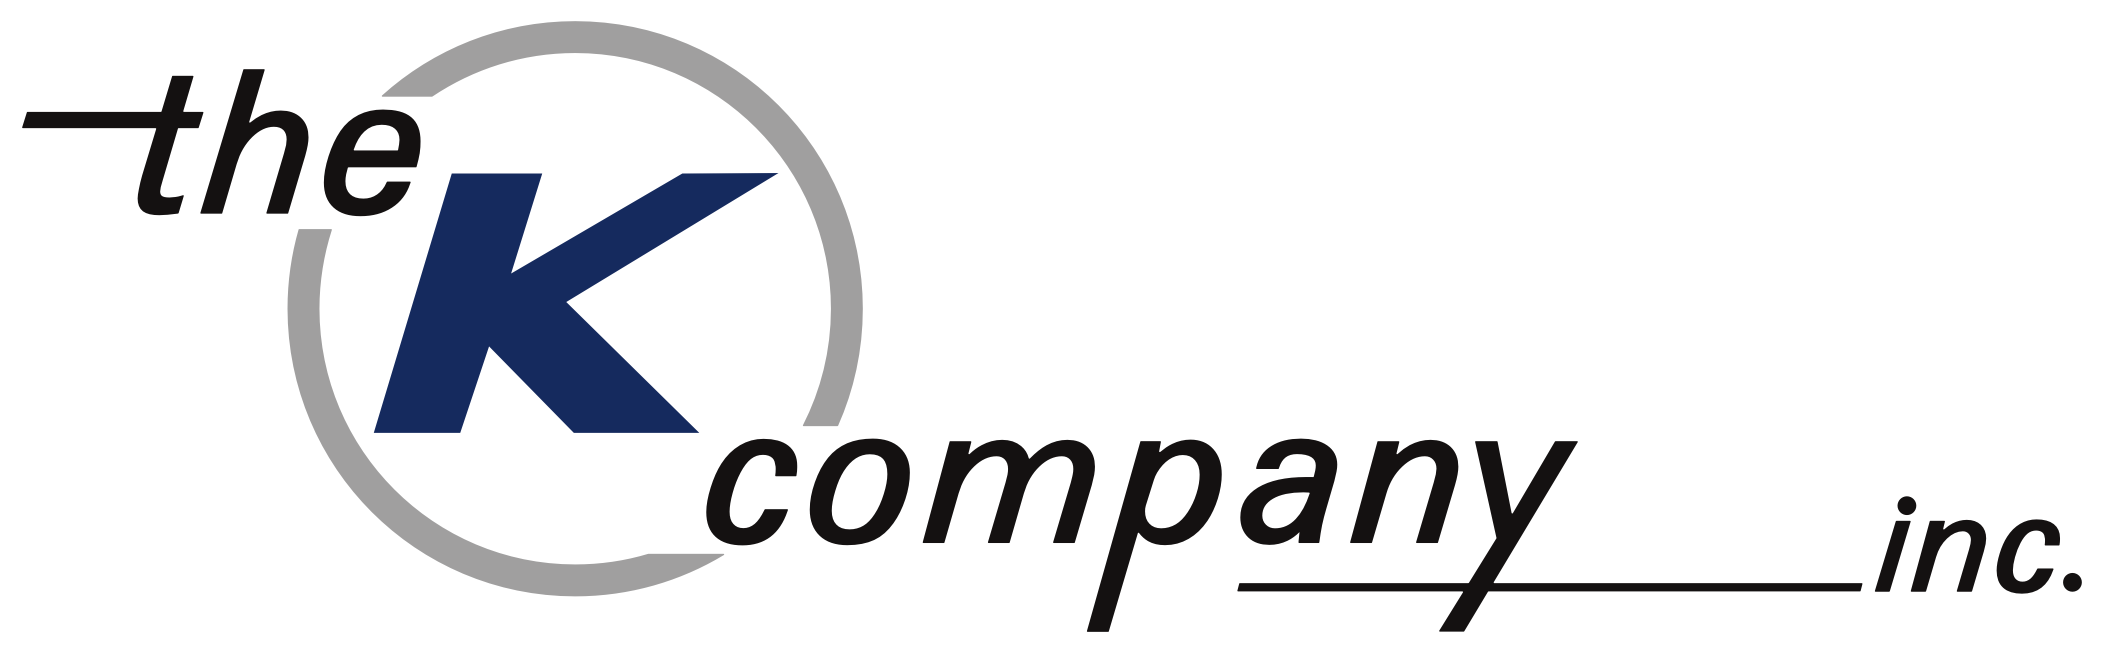 The K Company, Inc. Company Logo